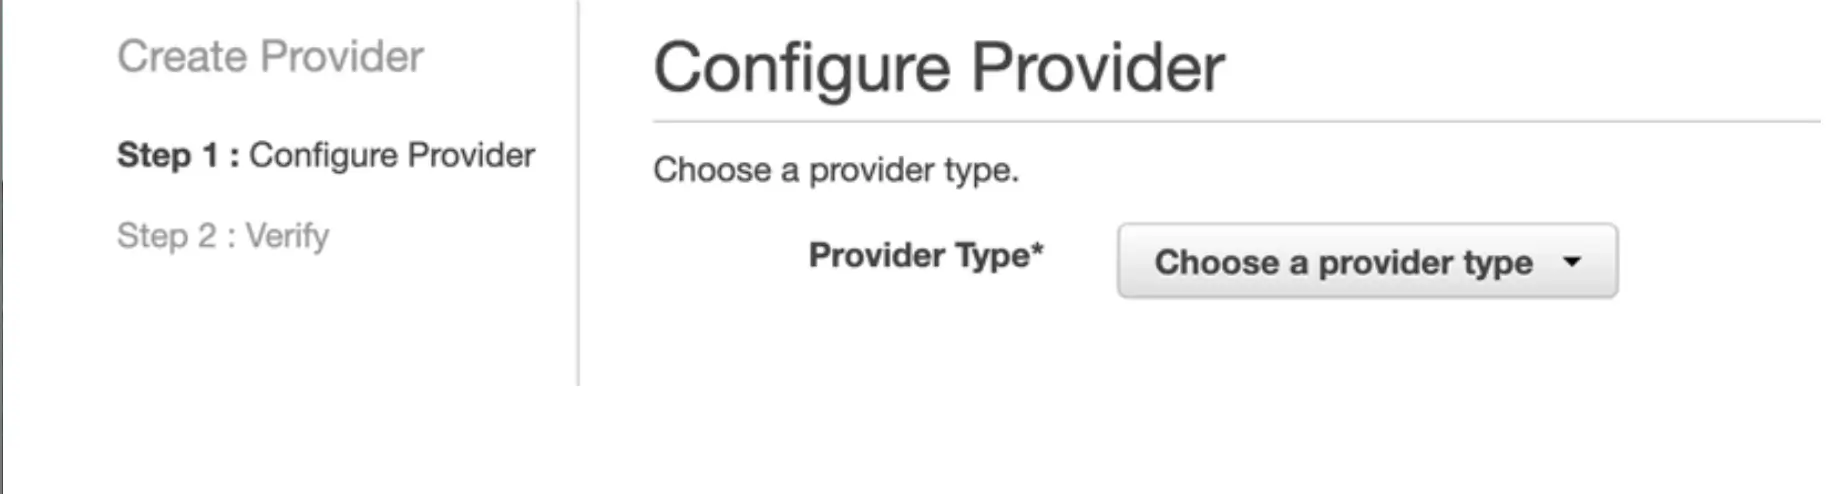 configure_provider